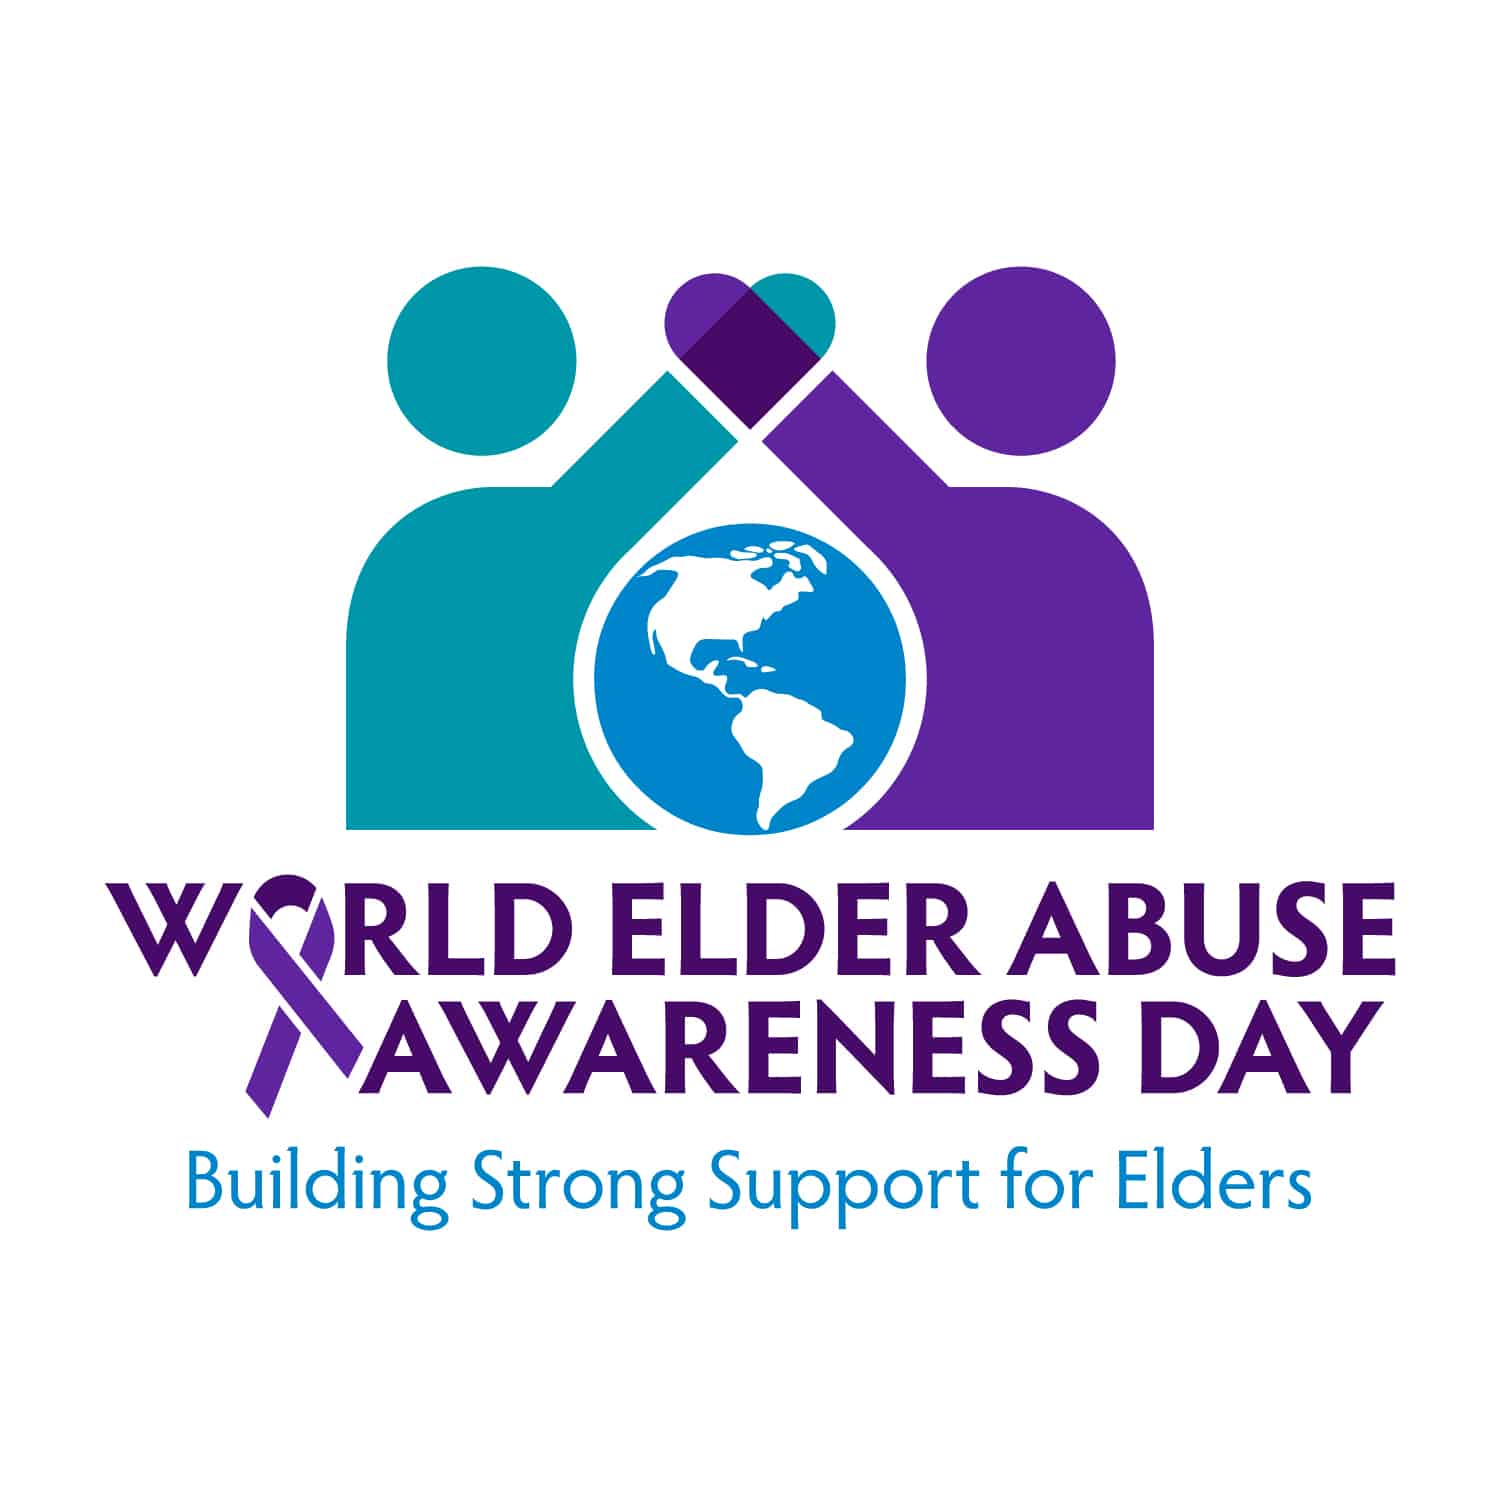 June 15, 2018 — World Elder Abuse Awareness Day